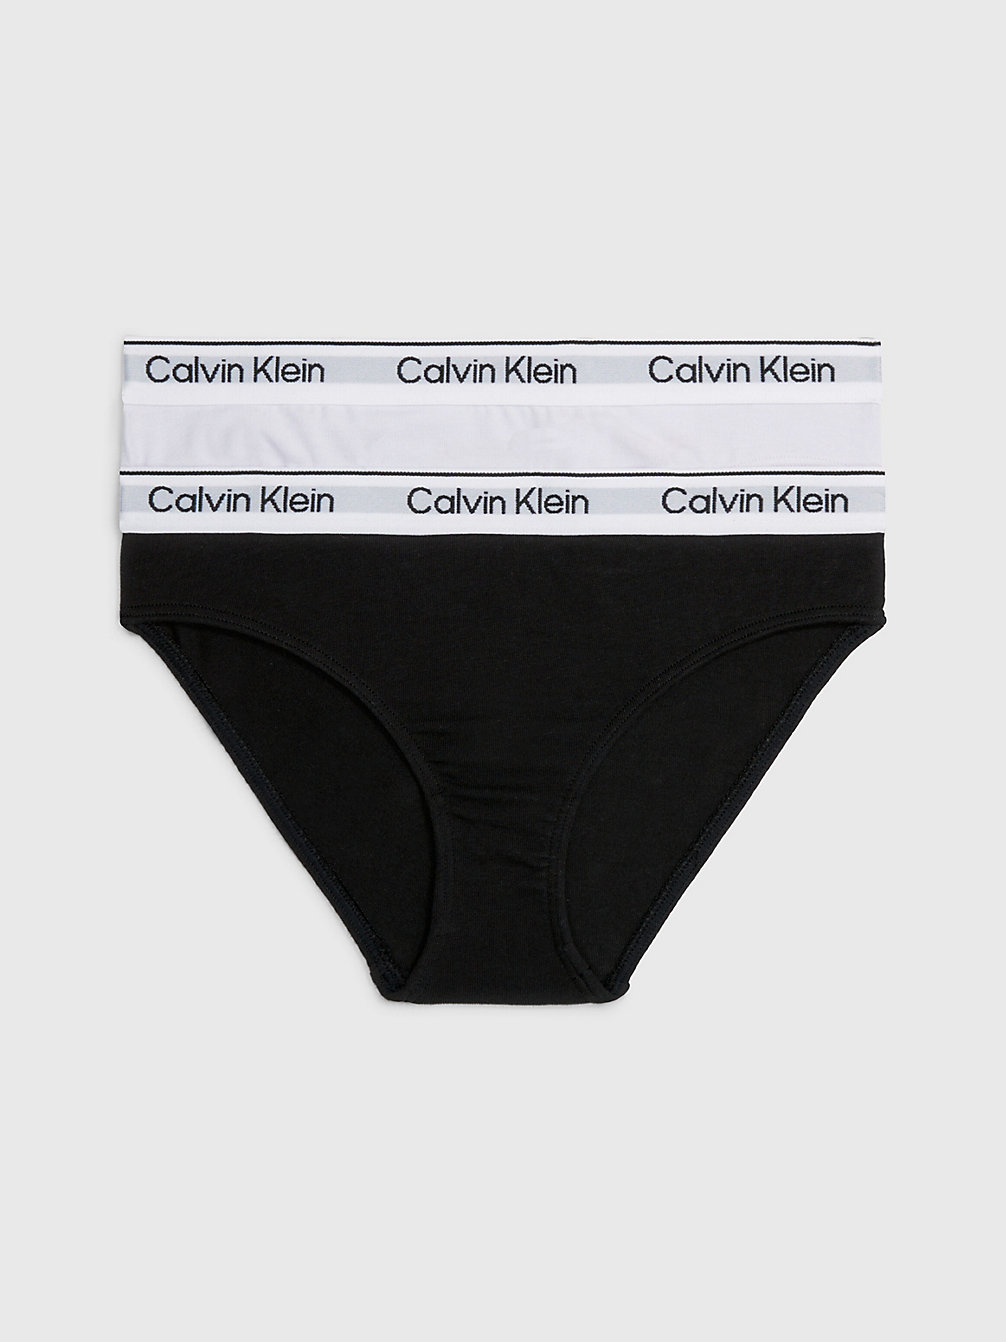 LAVENDERSPLASH/PVHBLACK 2er-Pack Slips Für Mädchen - Modern Cotton undefined girls Calvin Klein